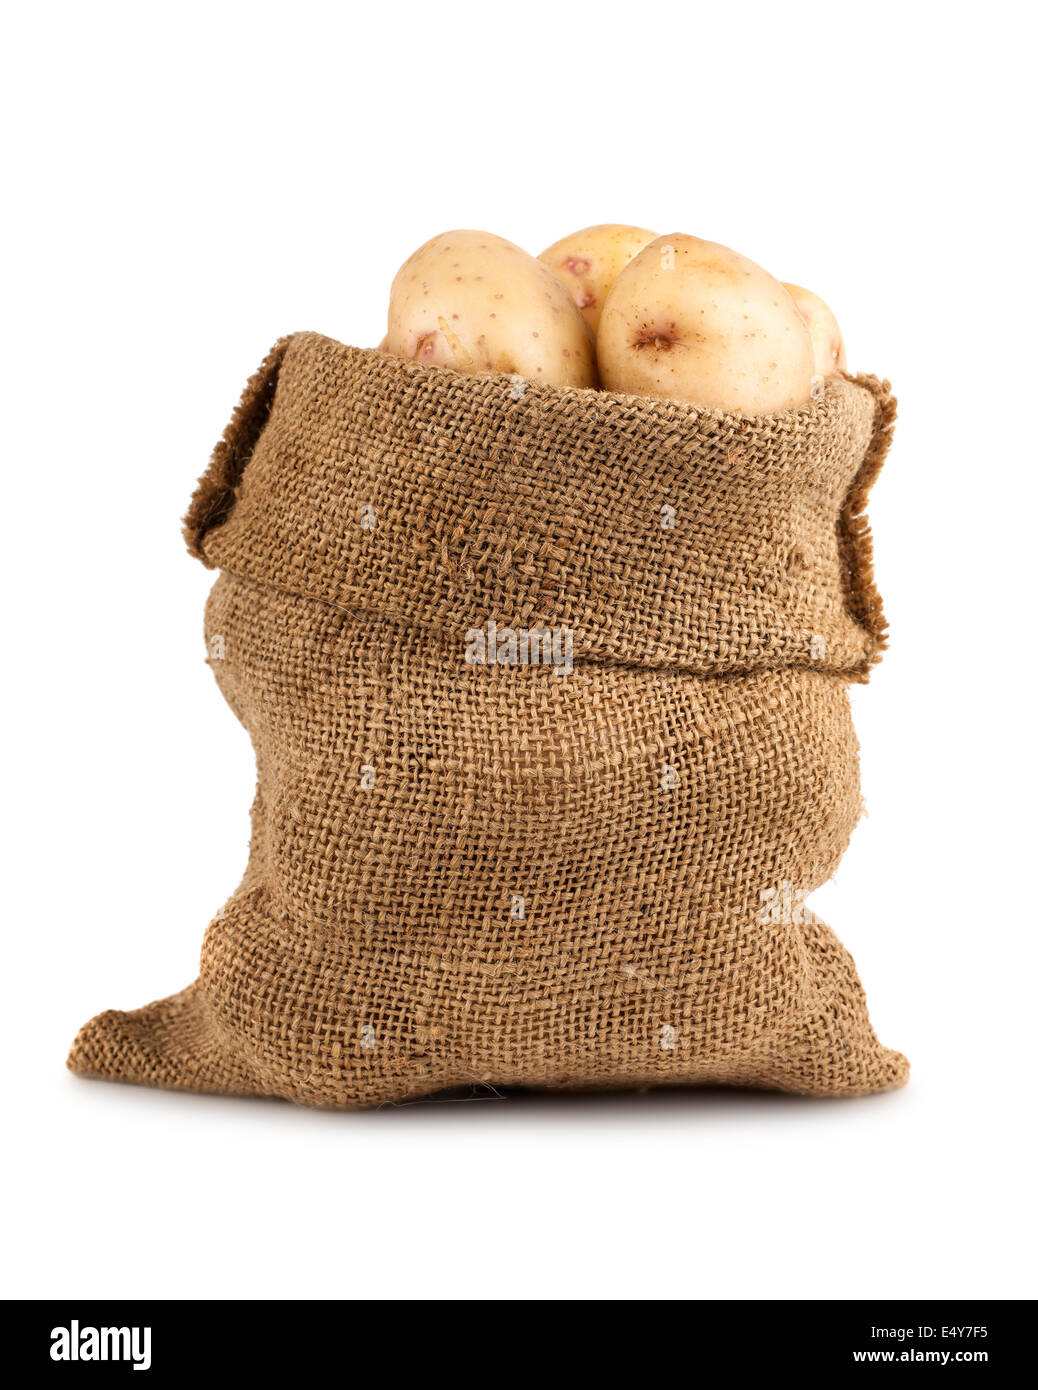 Ripe potato in burlap sack Stock Photo